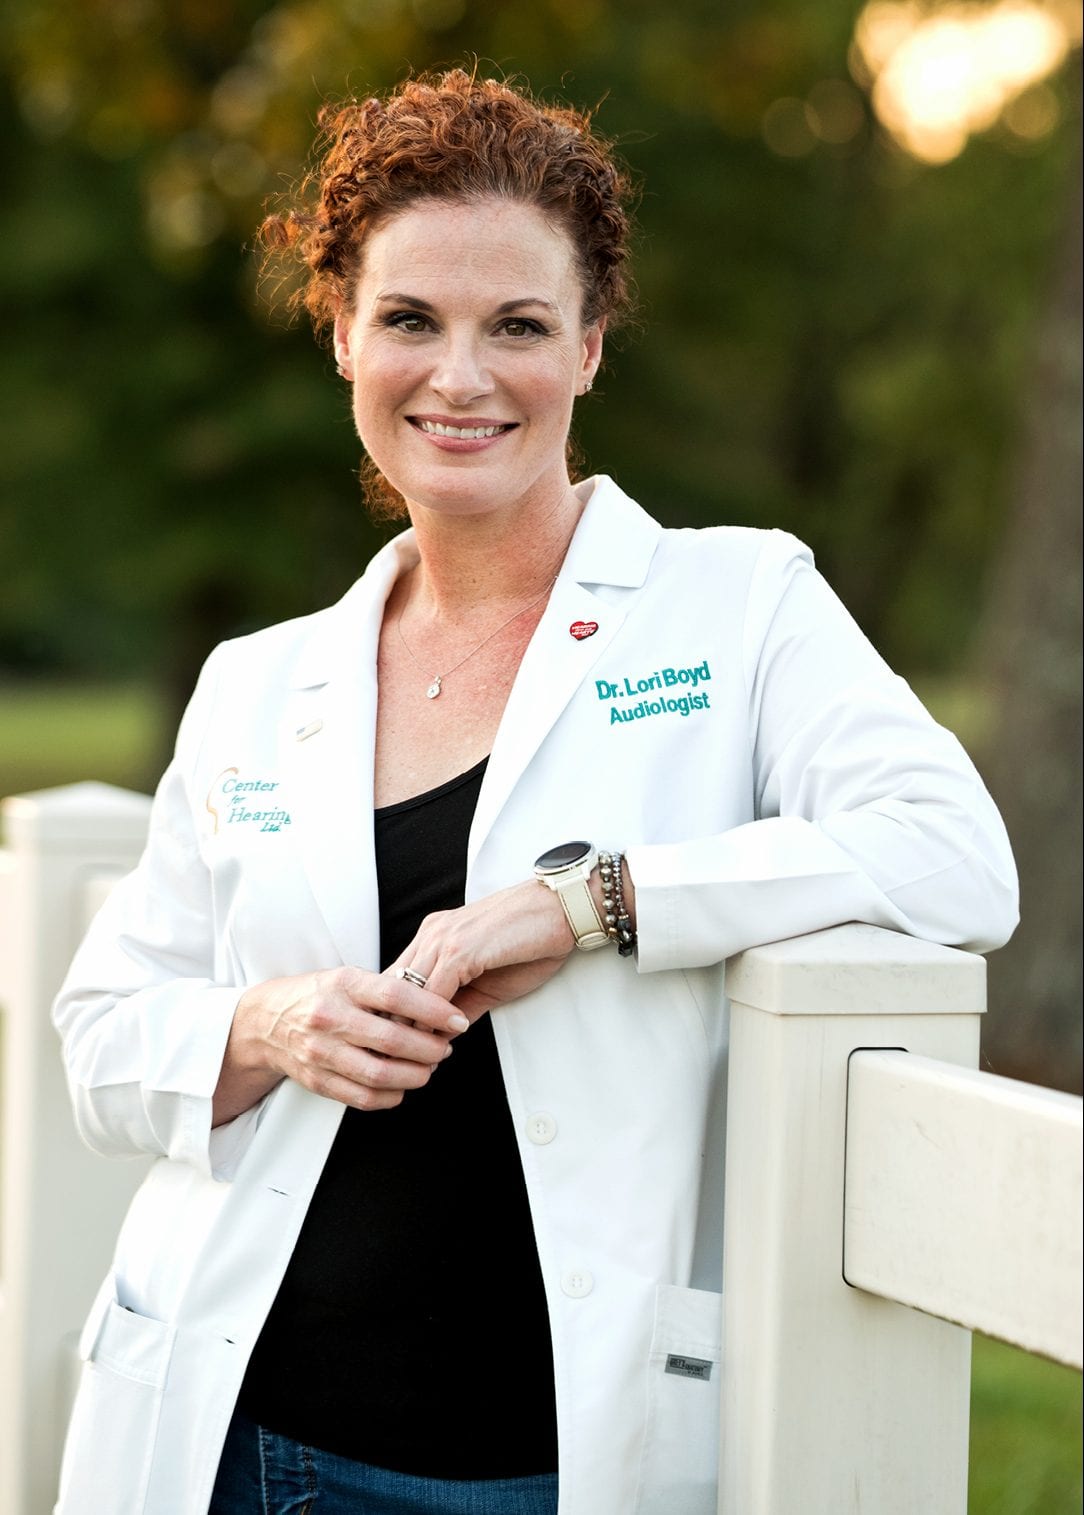 Dr. Lori Boyd